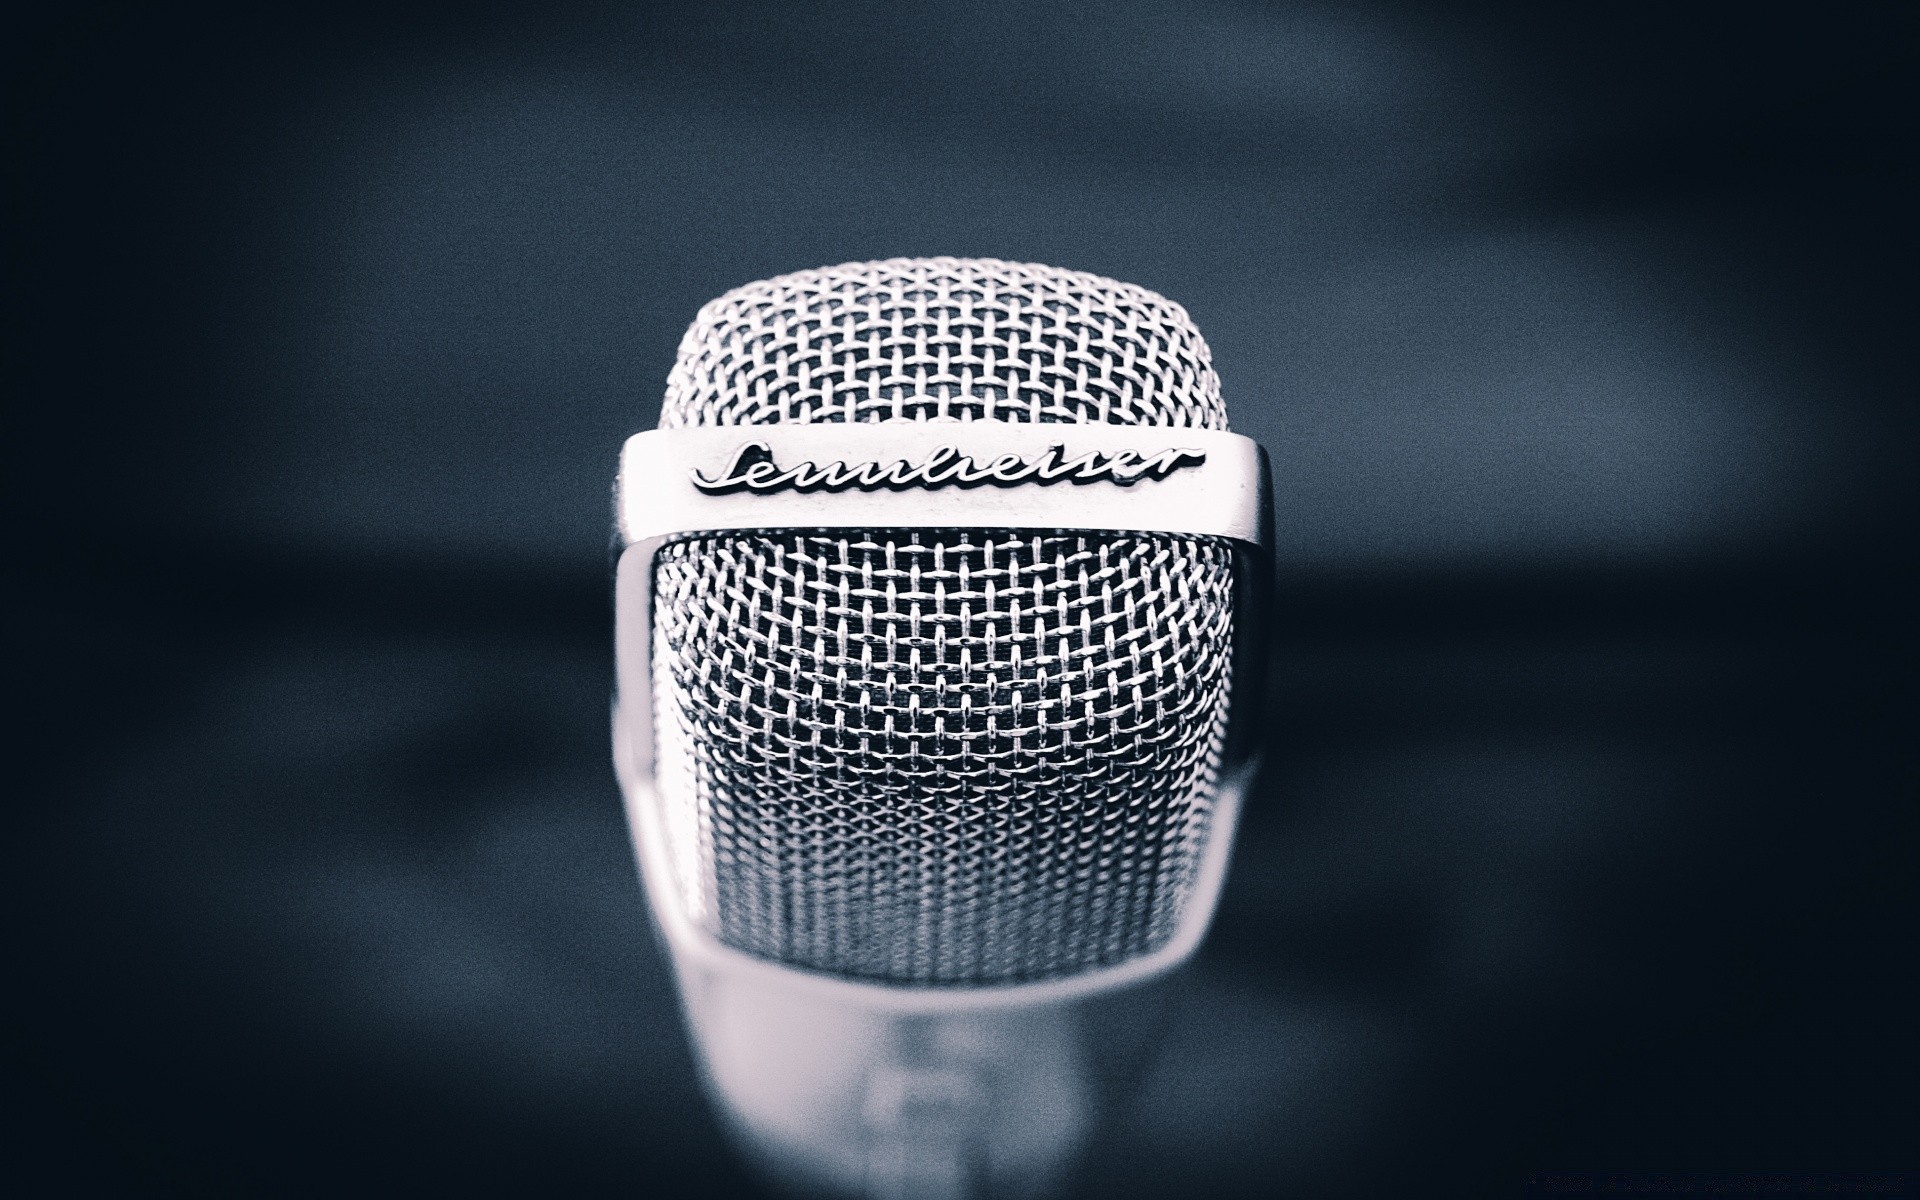 винтаж караоке микрофон звук музыка голос хром воздуха технология студия фонограф запись классический